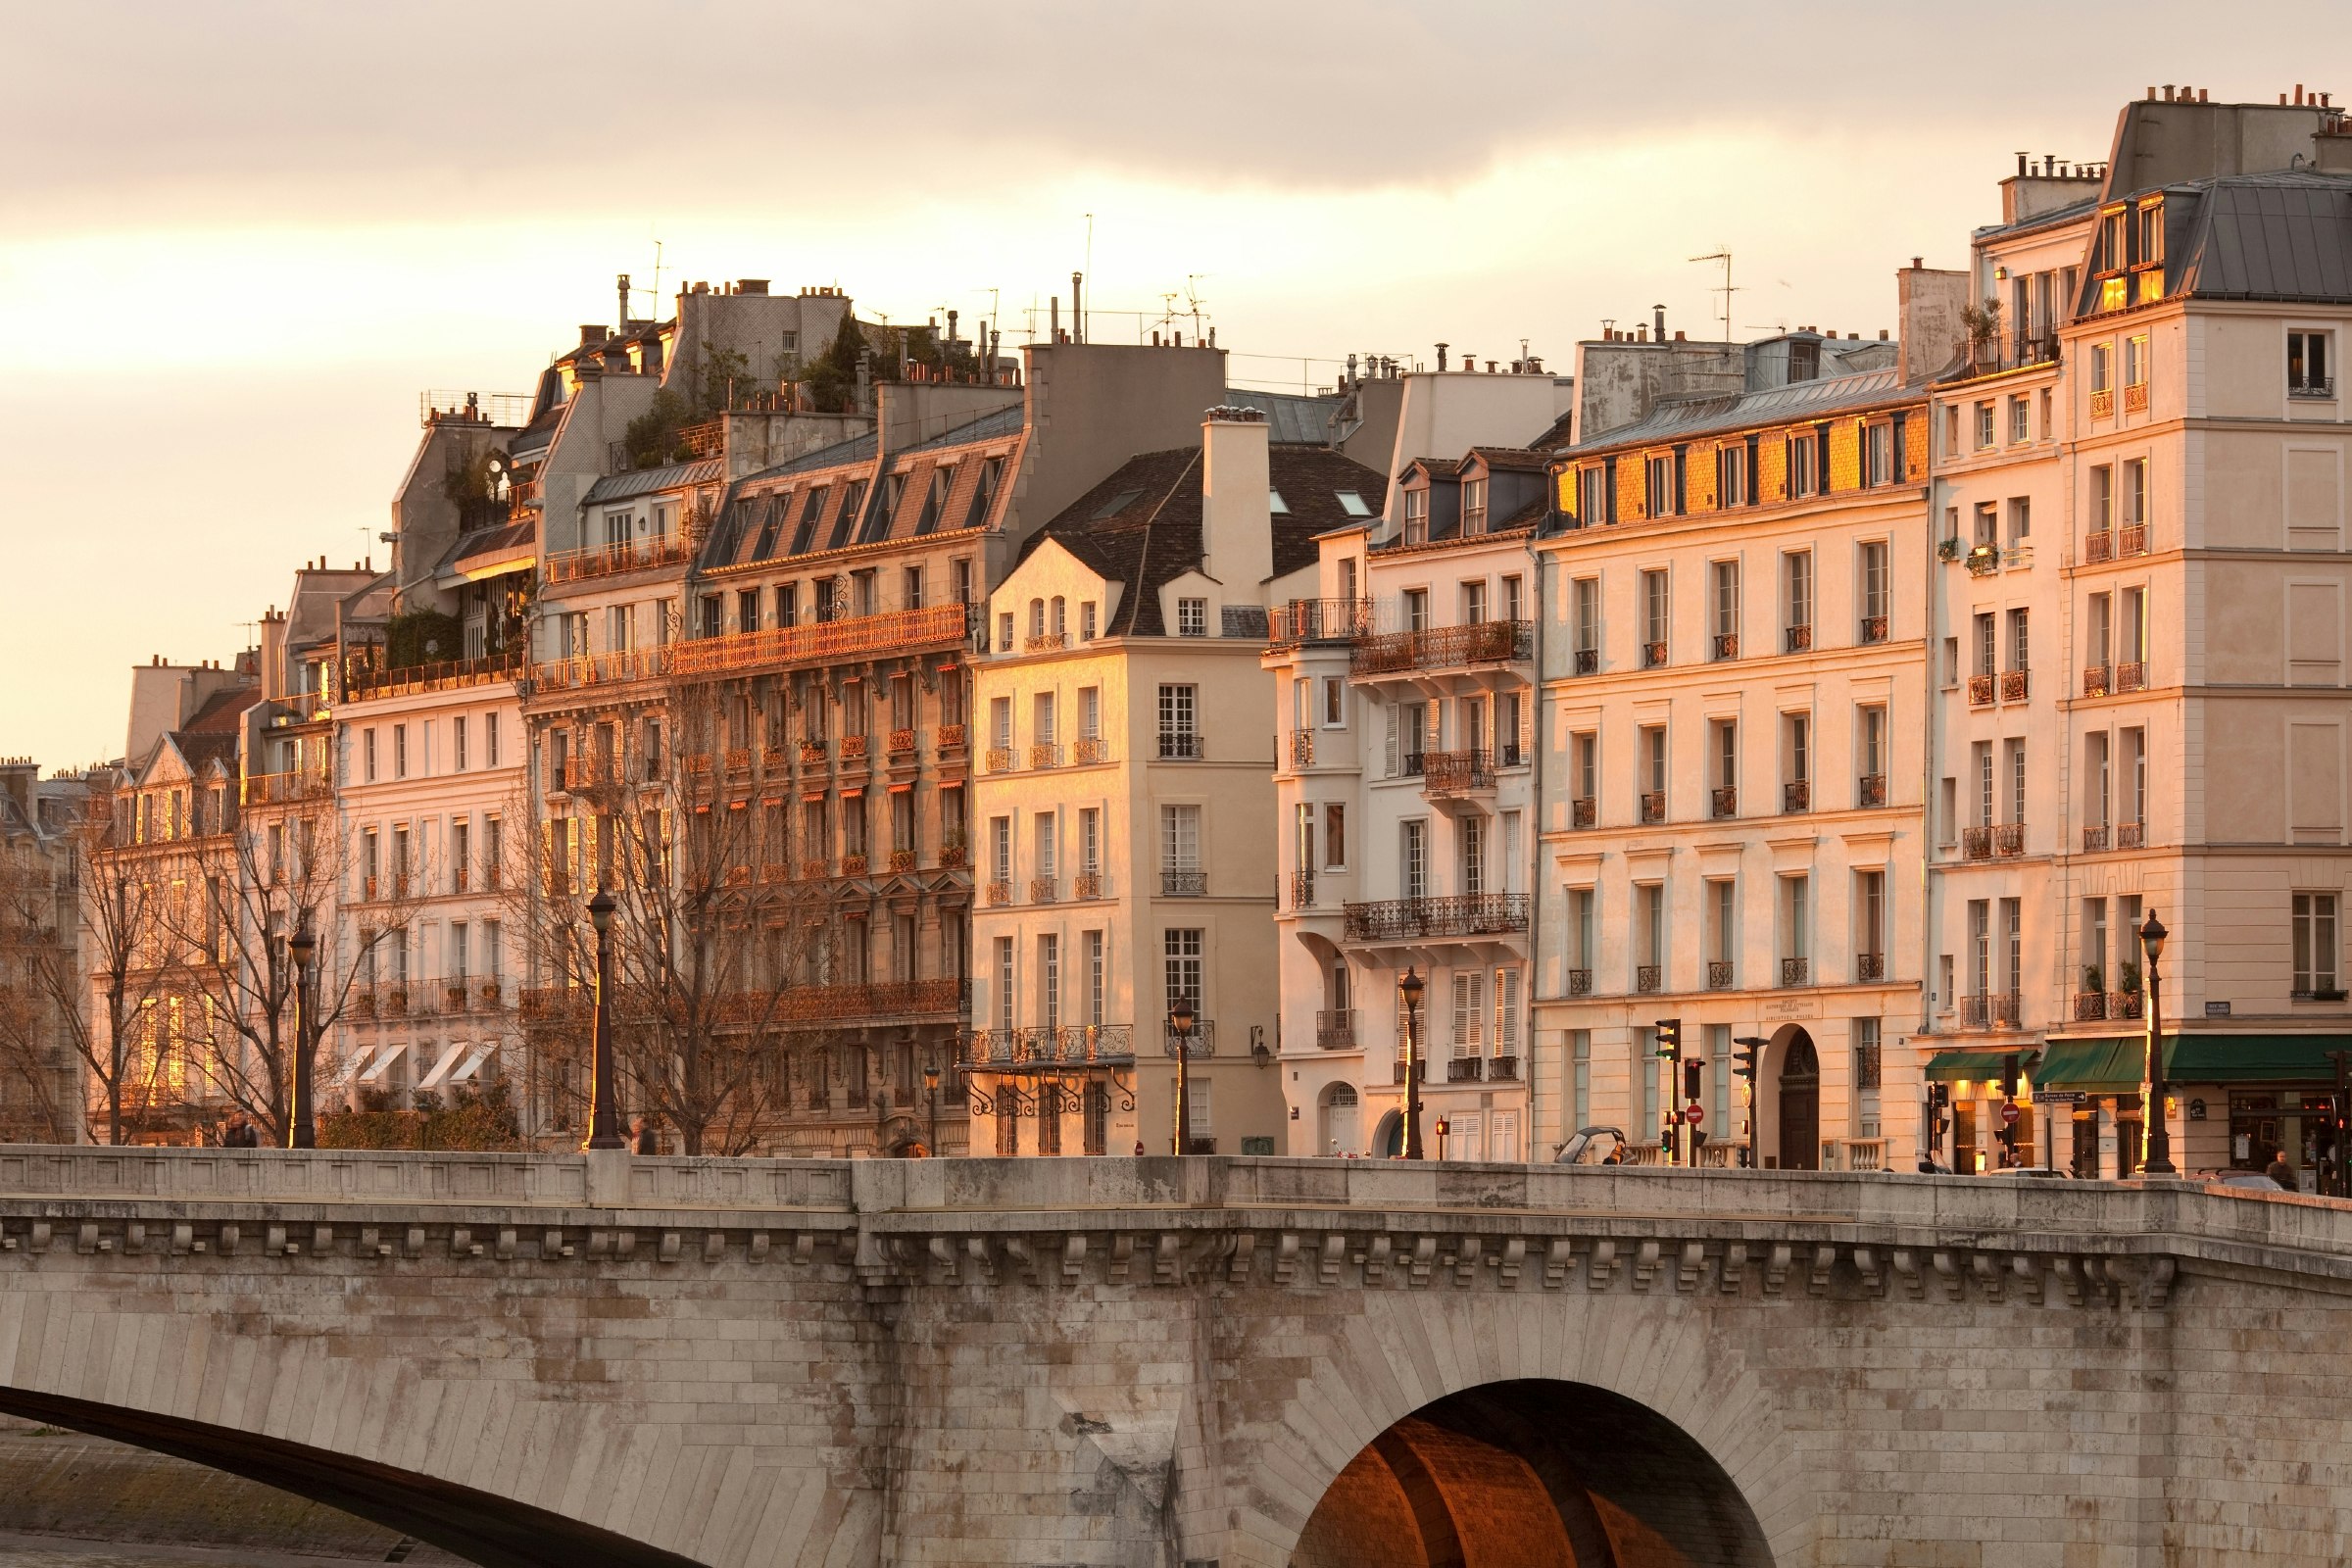 Facades of apartment buildings at Ile Saint Louis and Pont de la Tournelle bridge, Paris, France.